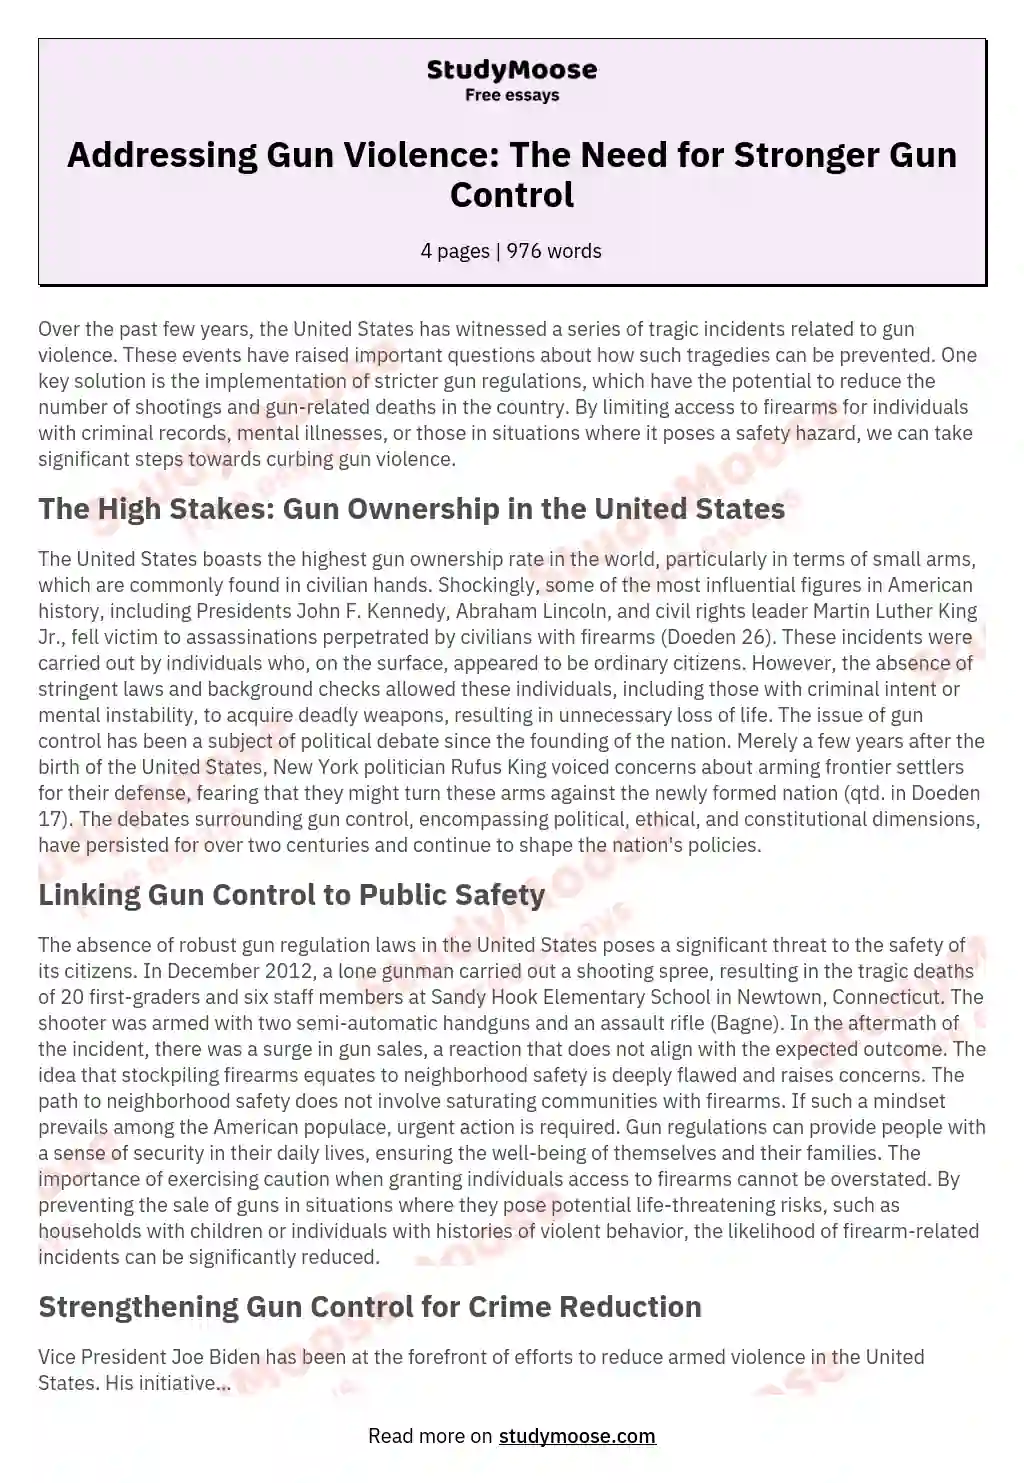 argumentative gun control essay topics